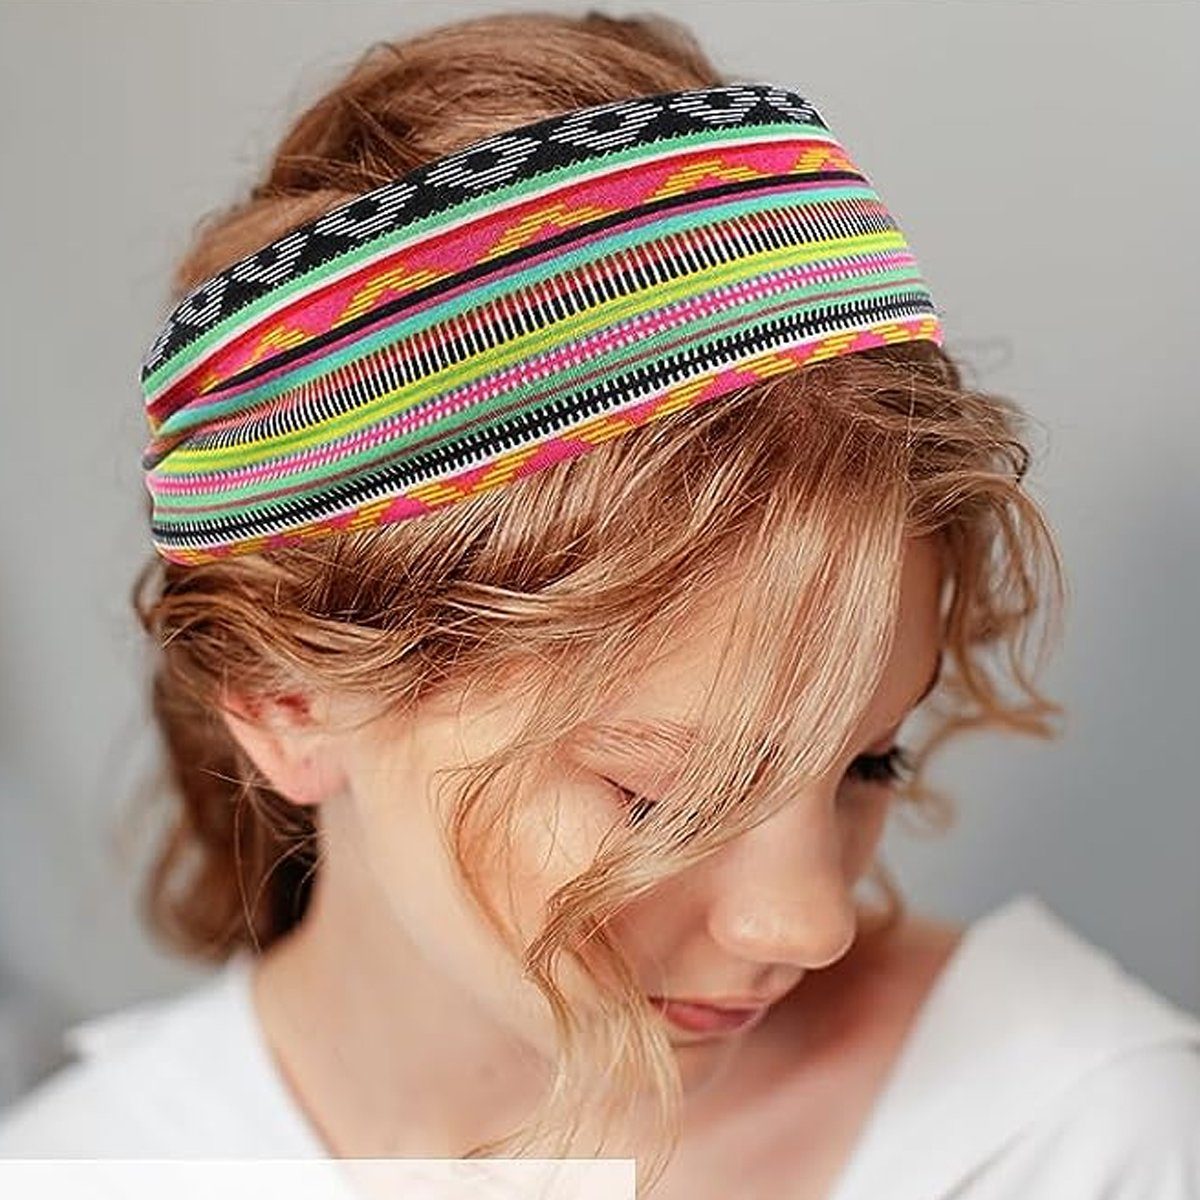 Jormftte Haarband Haarbänder Damen Breite Elastische hellbraun Yoga Sport + Regenbogenstreifen für + Weiche + armeegrün graues Haarband Pulver